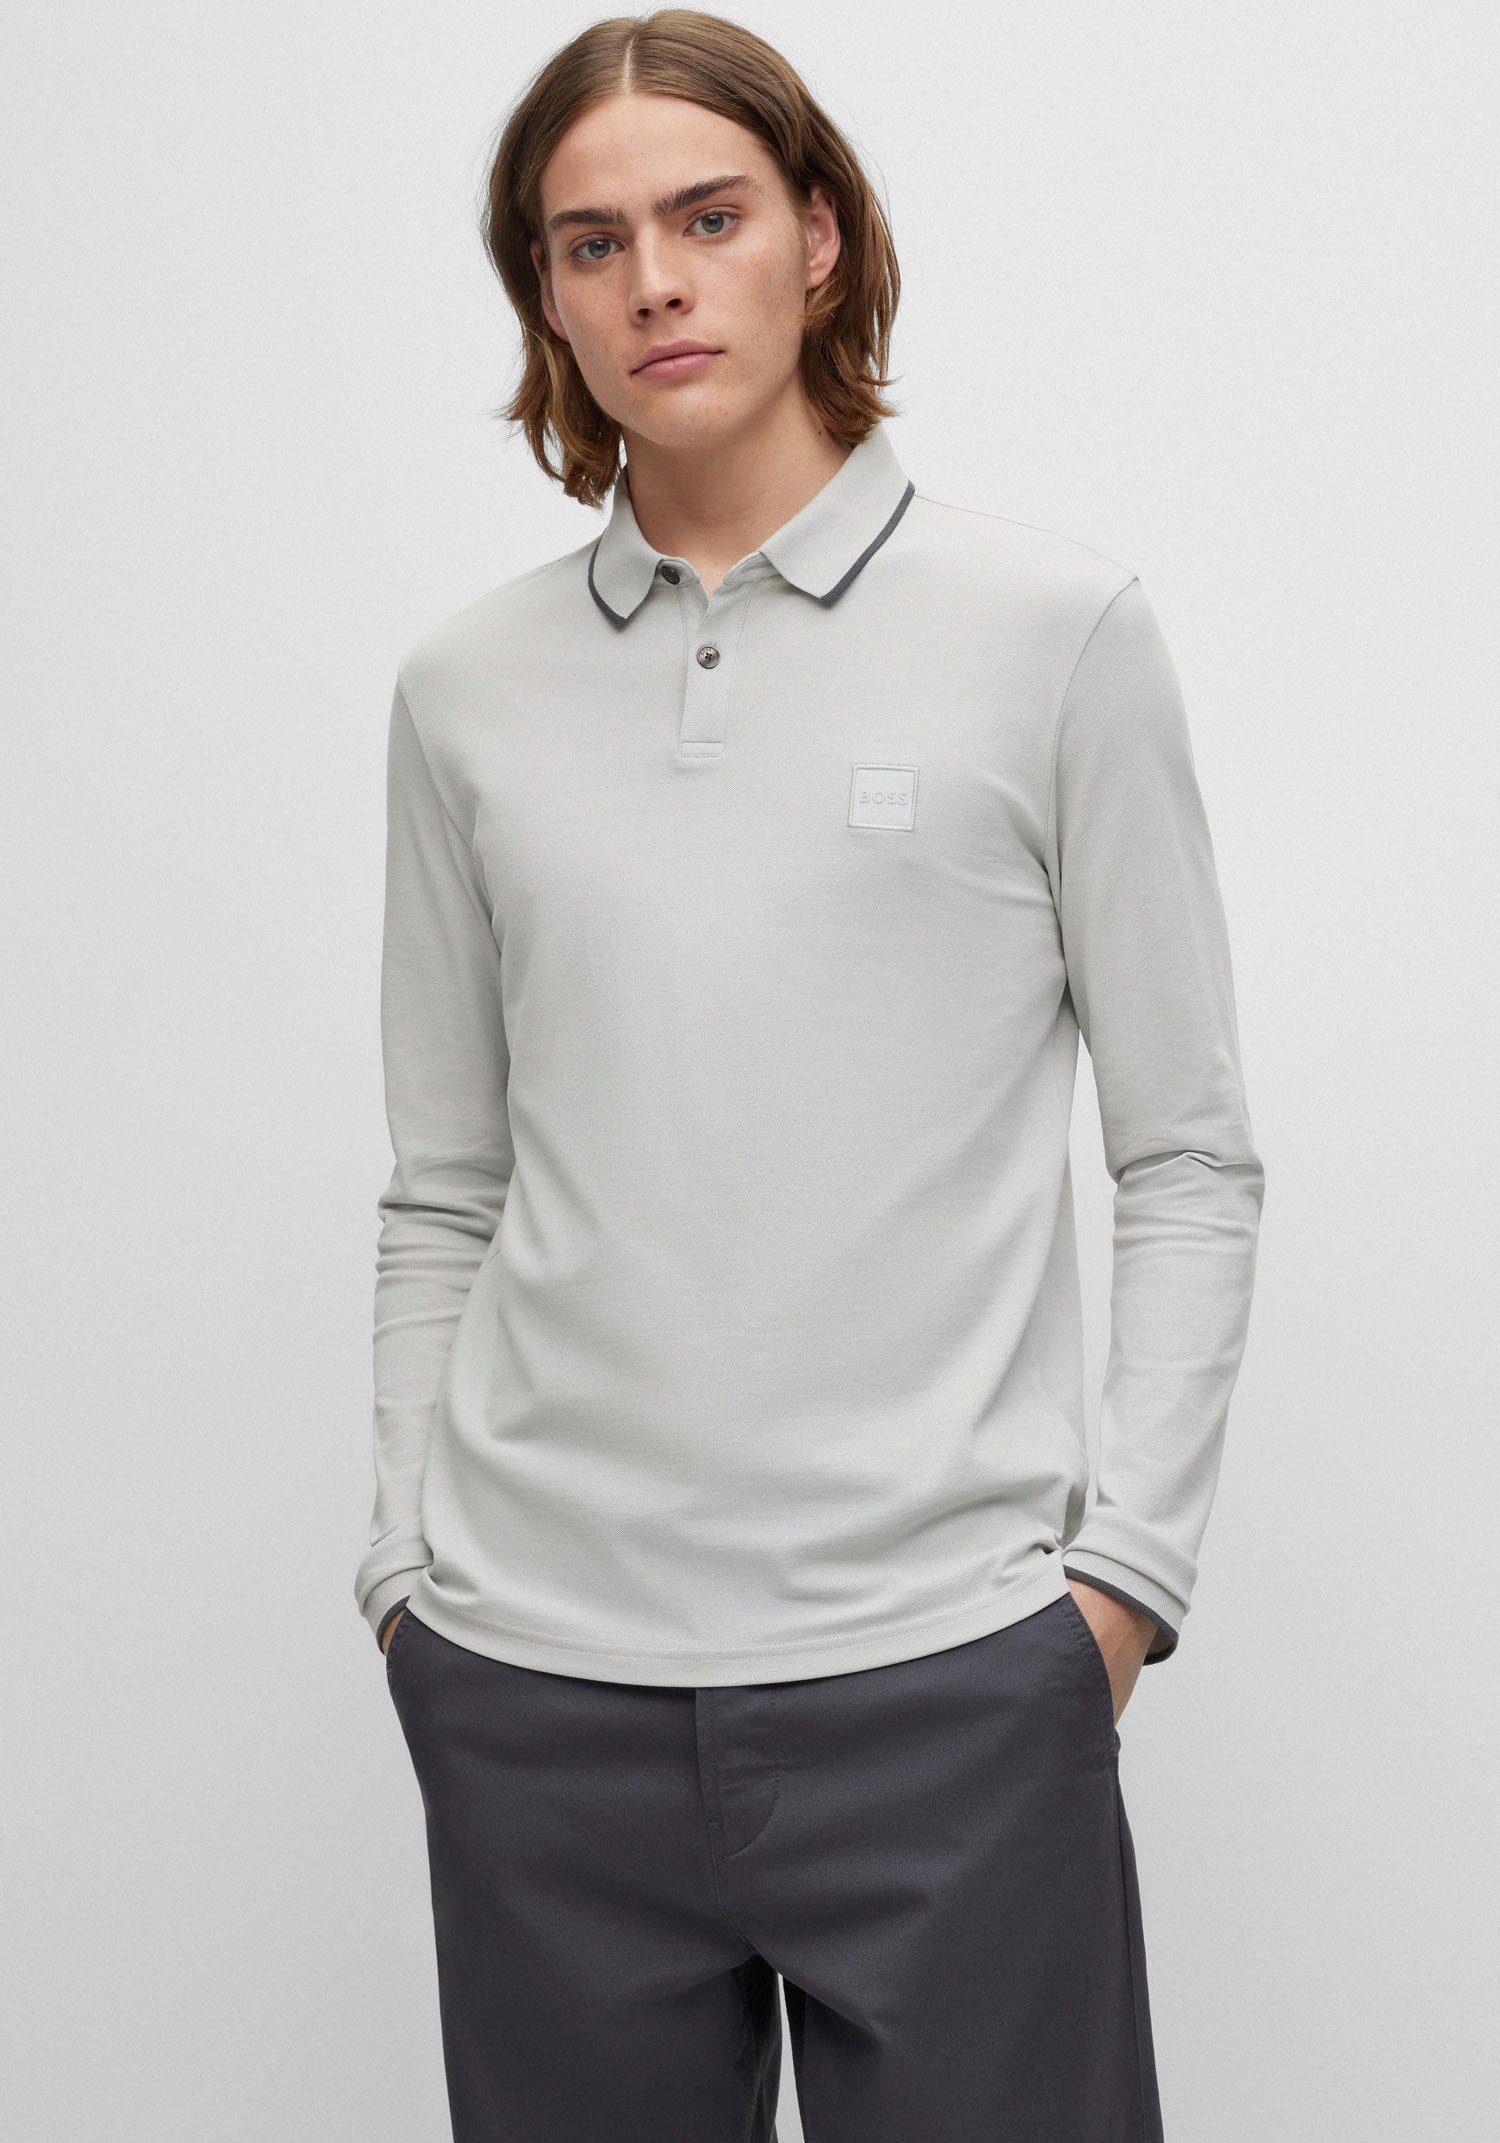 BOSS ORANGE Poloshirt Passertiplong in feiner Baumwollqualität, Aus softem,  elastischem Baumwoll-Piqué